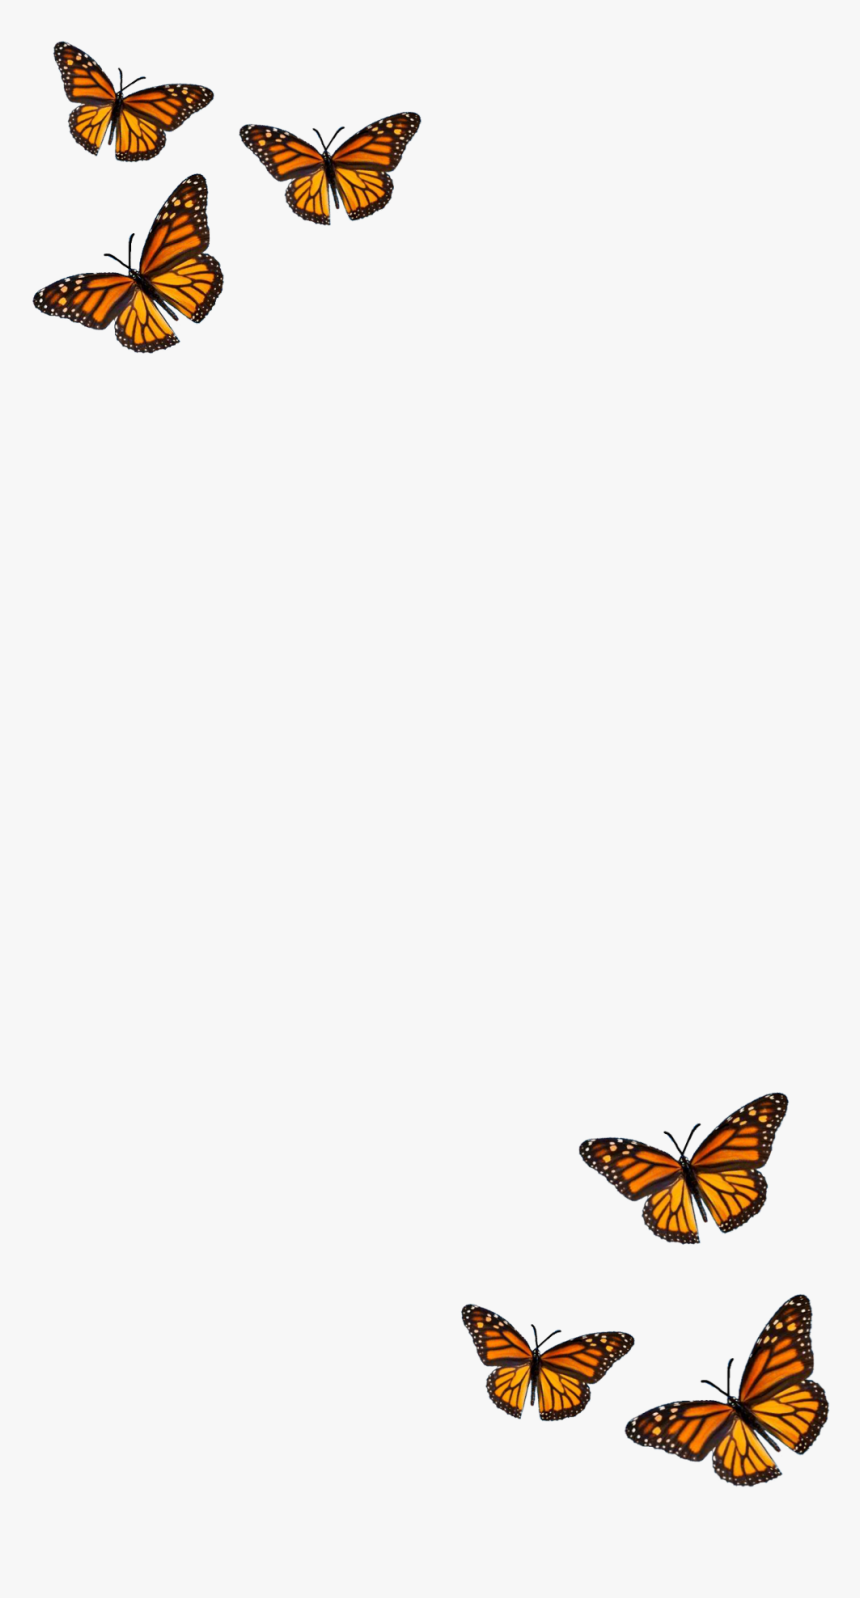 filter #butterfly #orange #black #aesthetic Butterfly